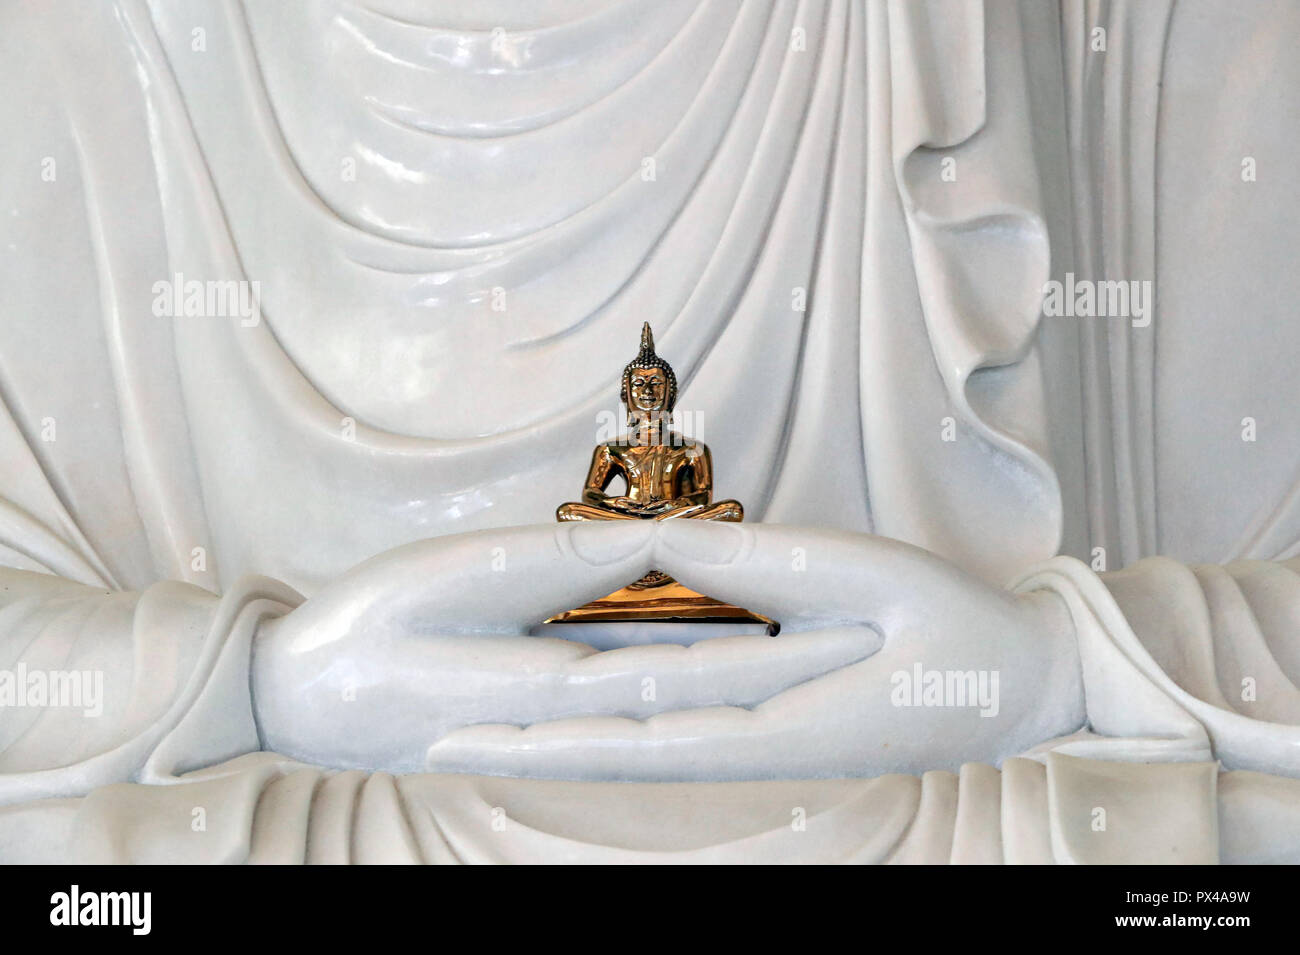 Linh Phong temple bouddhiste. Statue de Bouddha assis en marbre blanc. Dalat. Le Vietnam. Banque D'Images